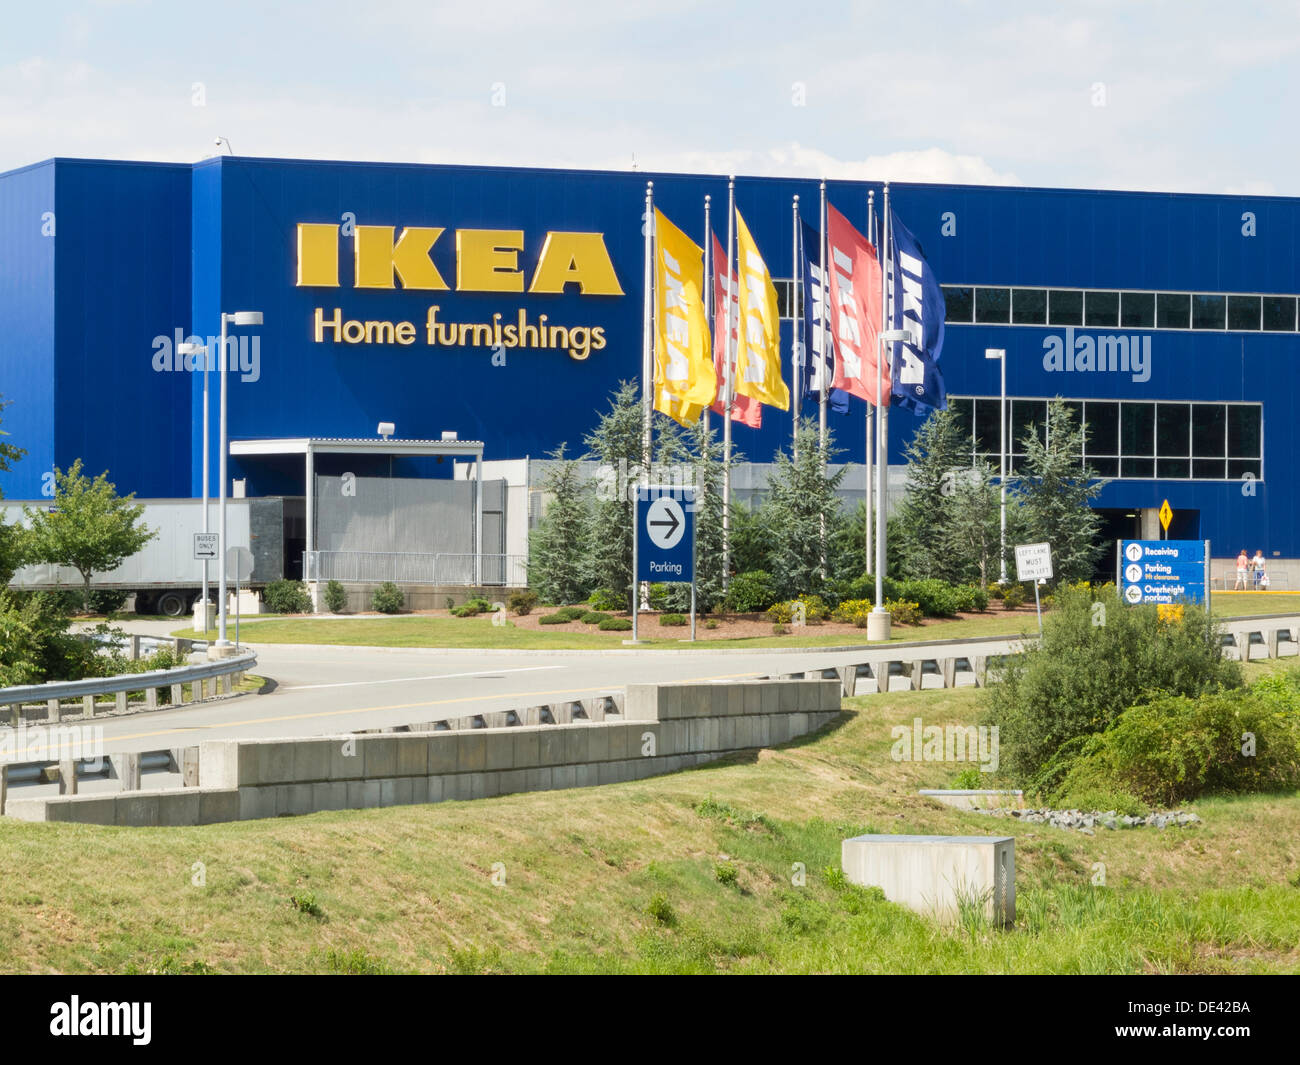 IKEA Swedish Retail Store Exterior, Stoughton, NA Stock Photo - Alamy